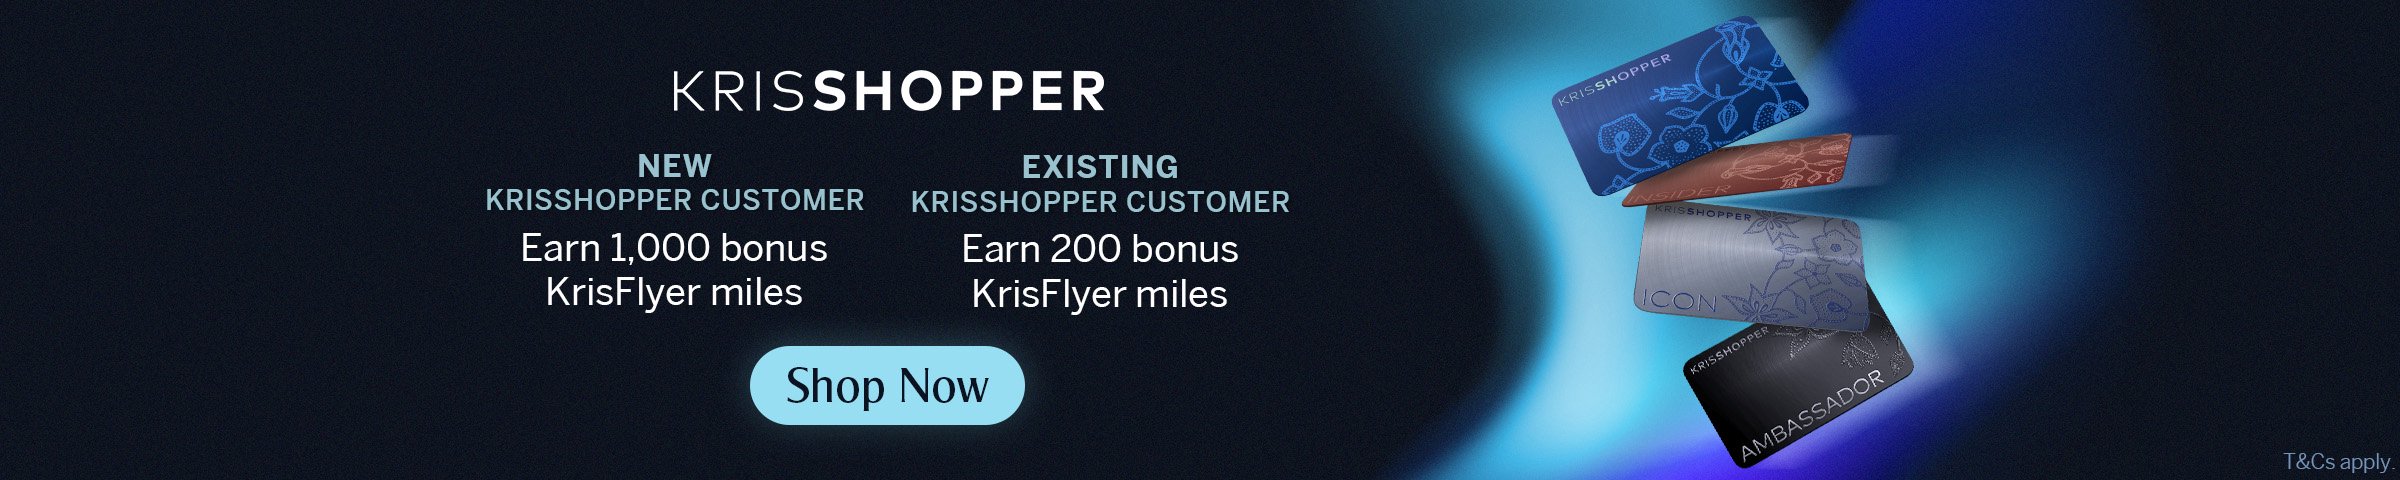 KrisShopper's 2nd Anniversary